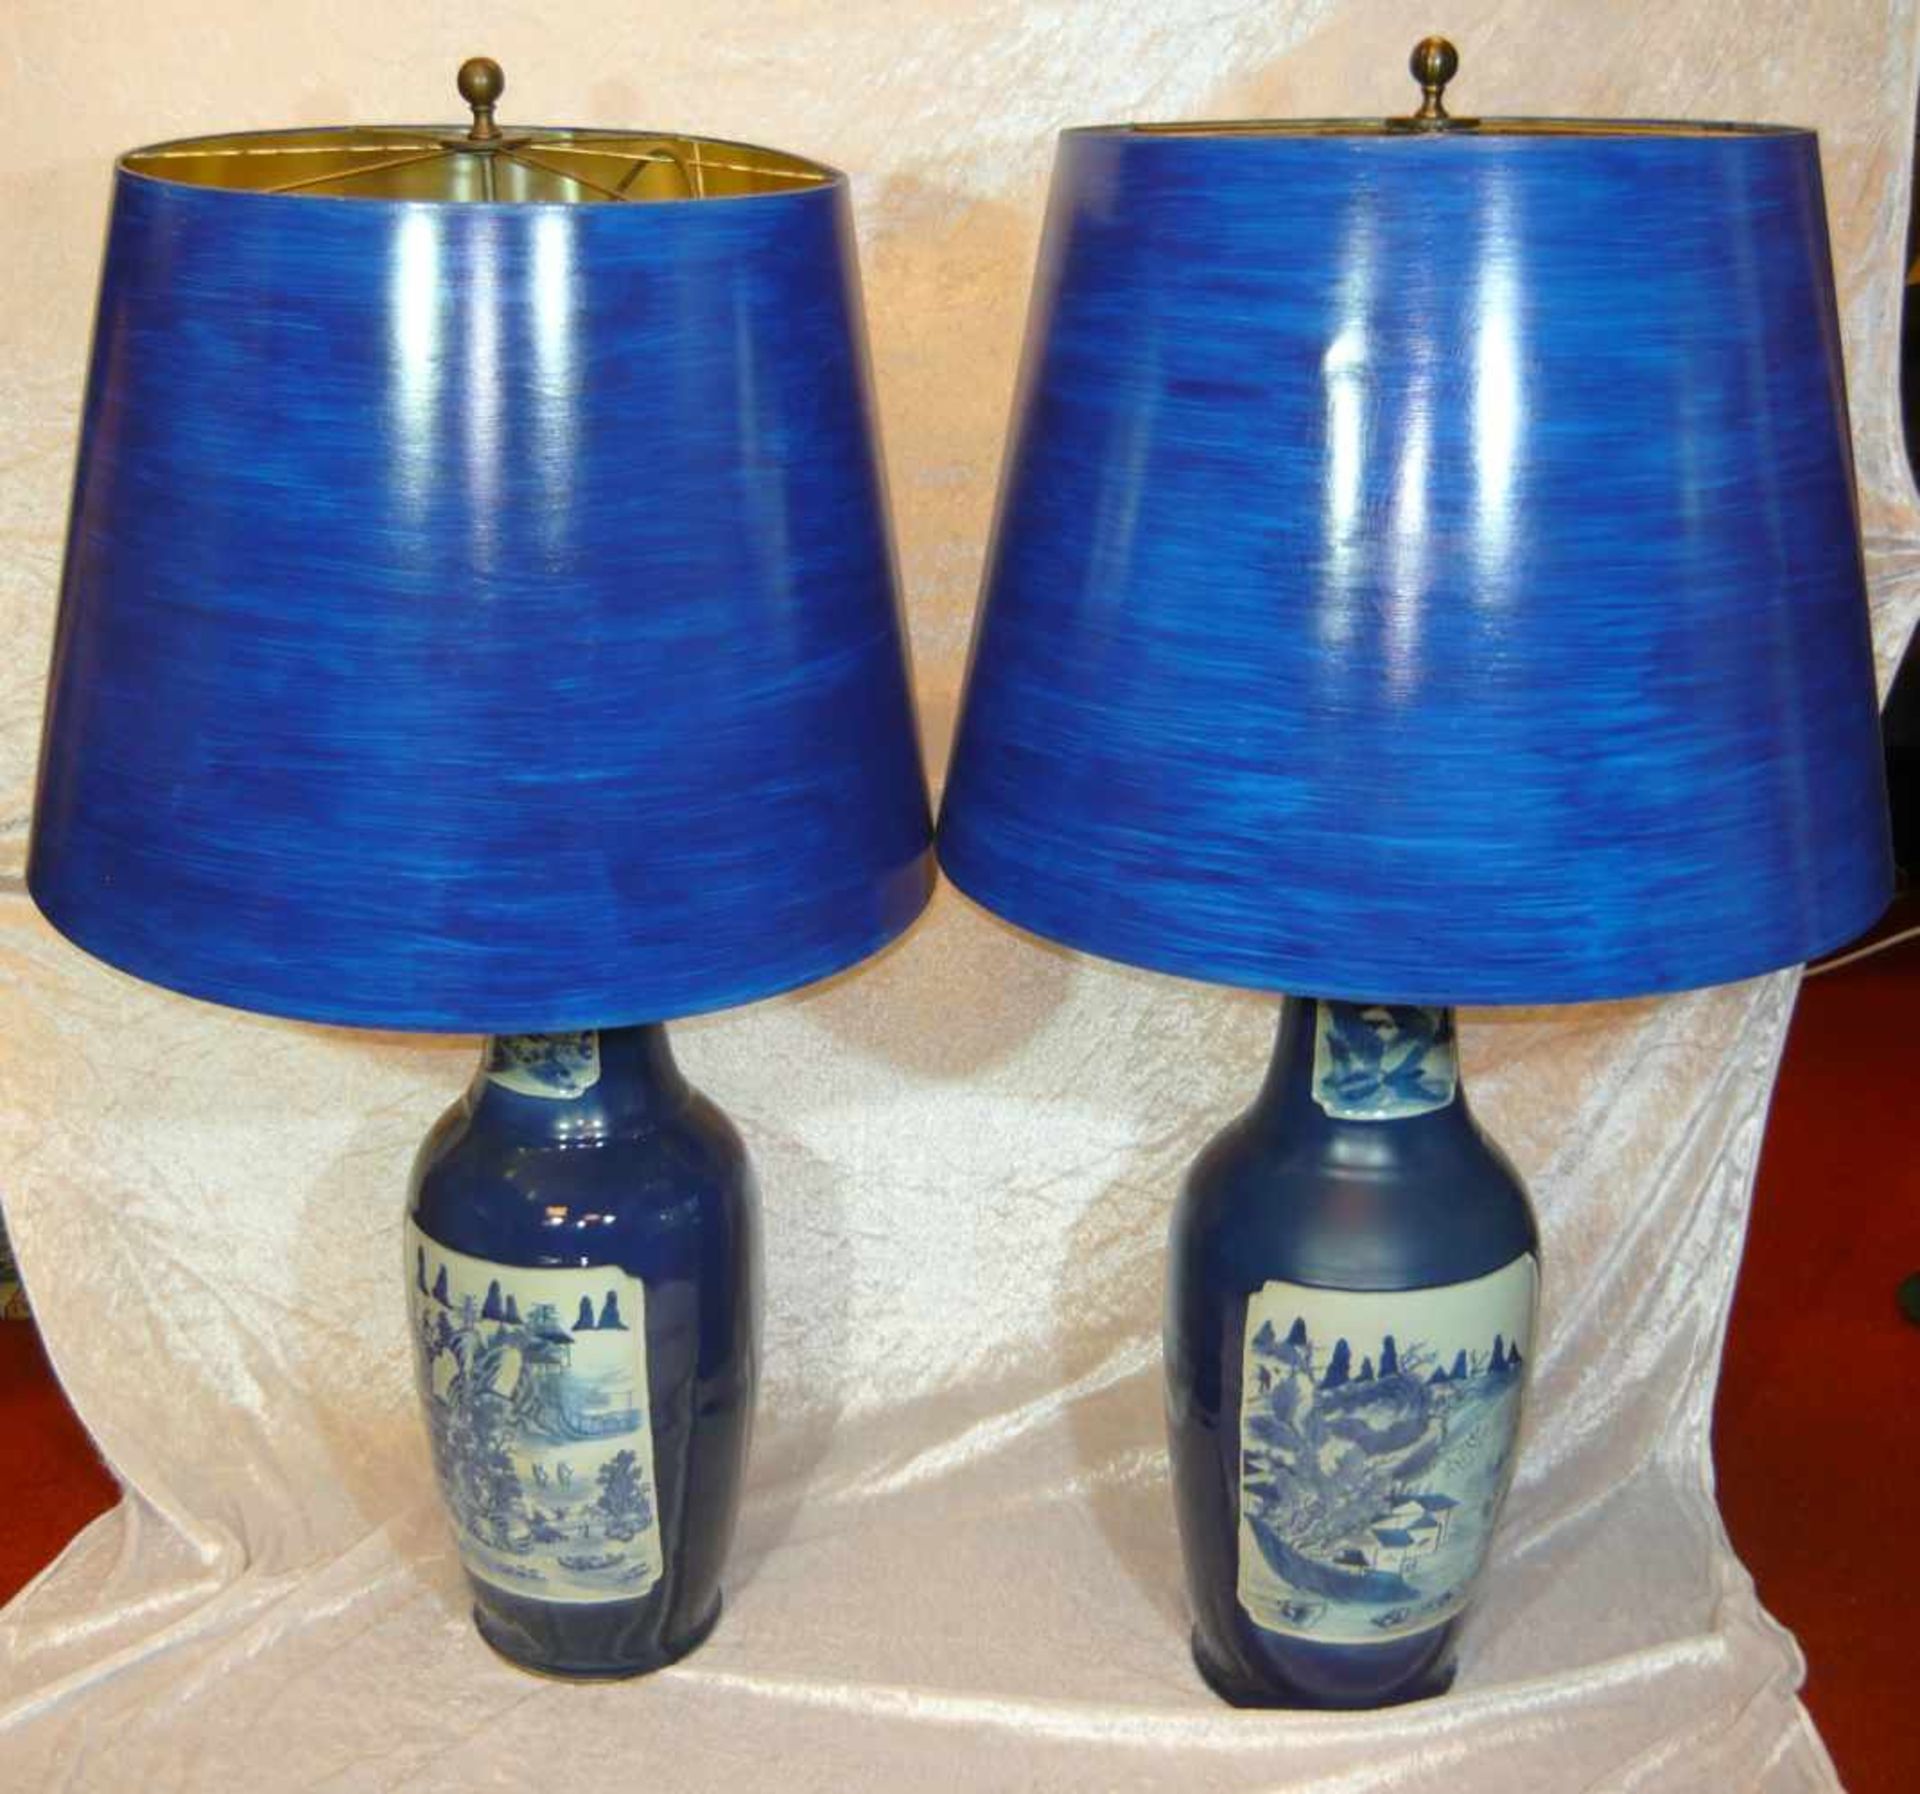 Paar chinesische Vasen mit Lampenmontierungen. Keine Bohrung an den Vasen vorhanden. Kabel tritt aus